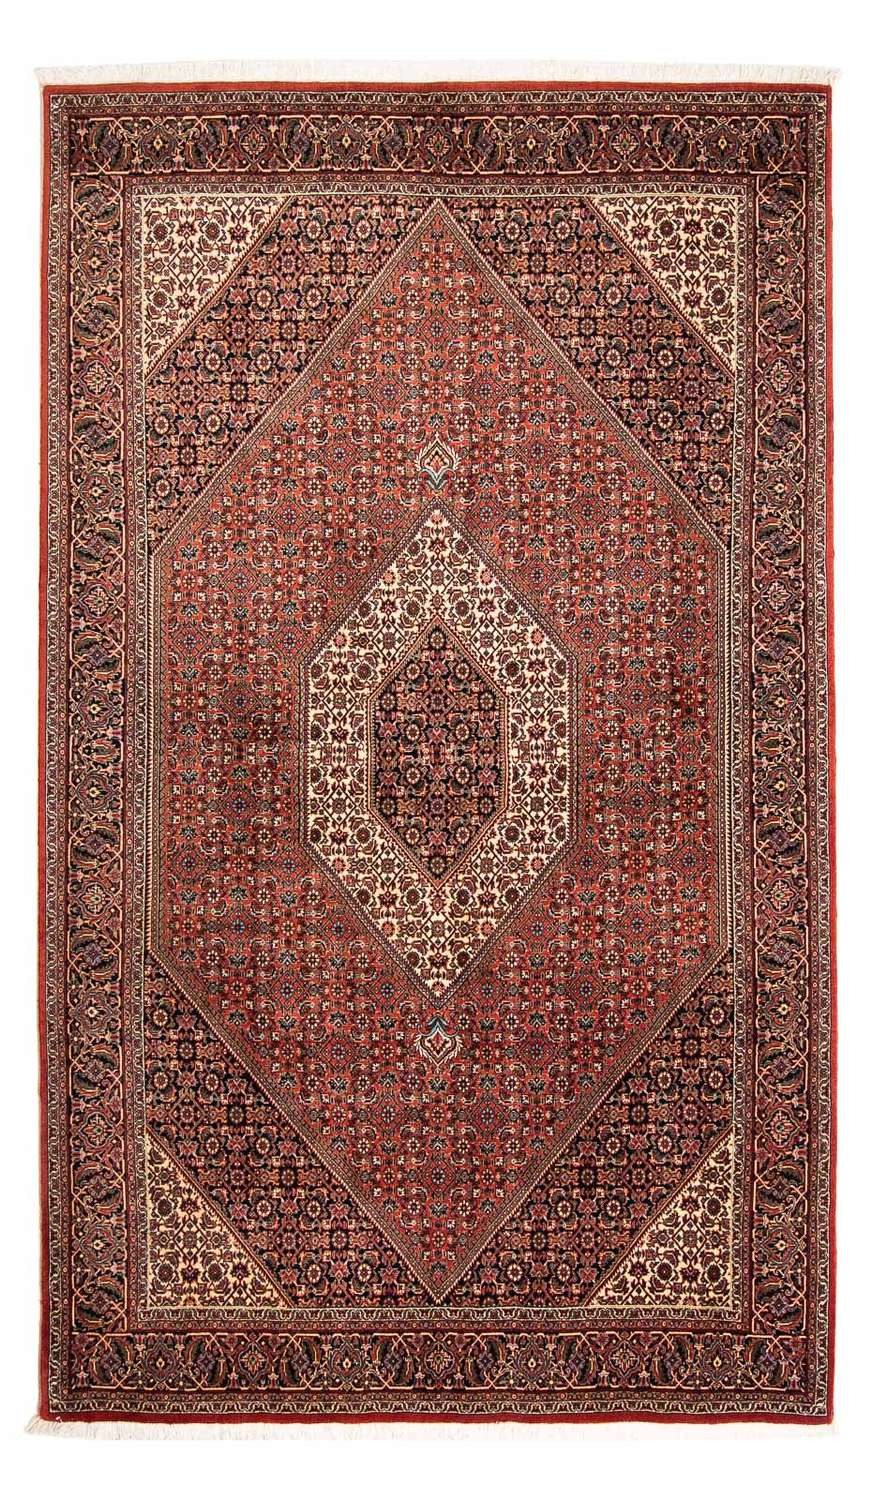 Persisk matta - Bijar - 252 x 150 cm - röd